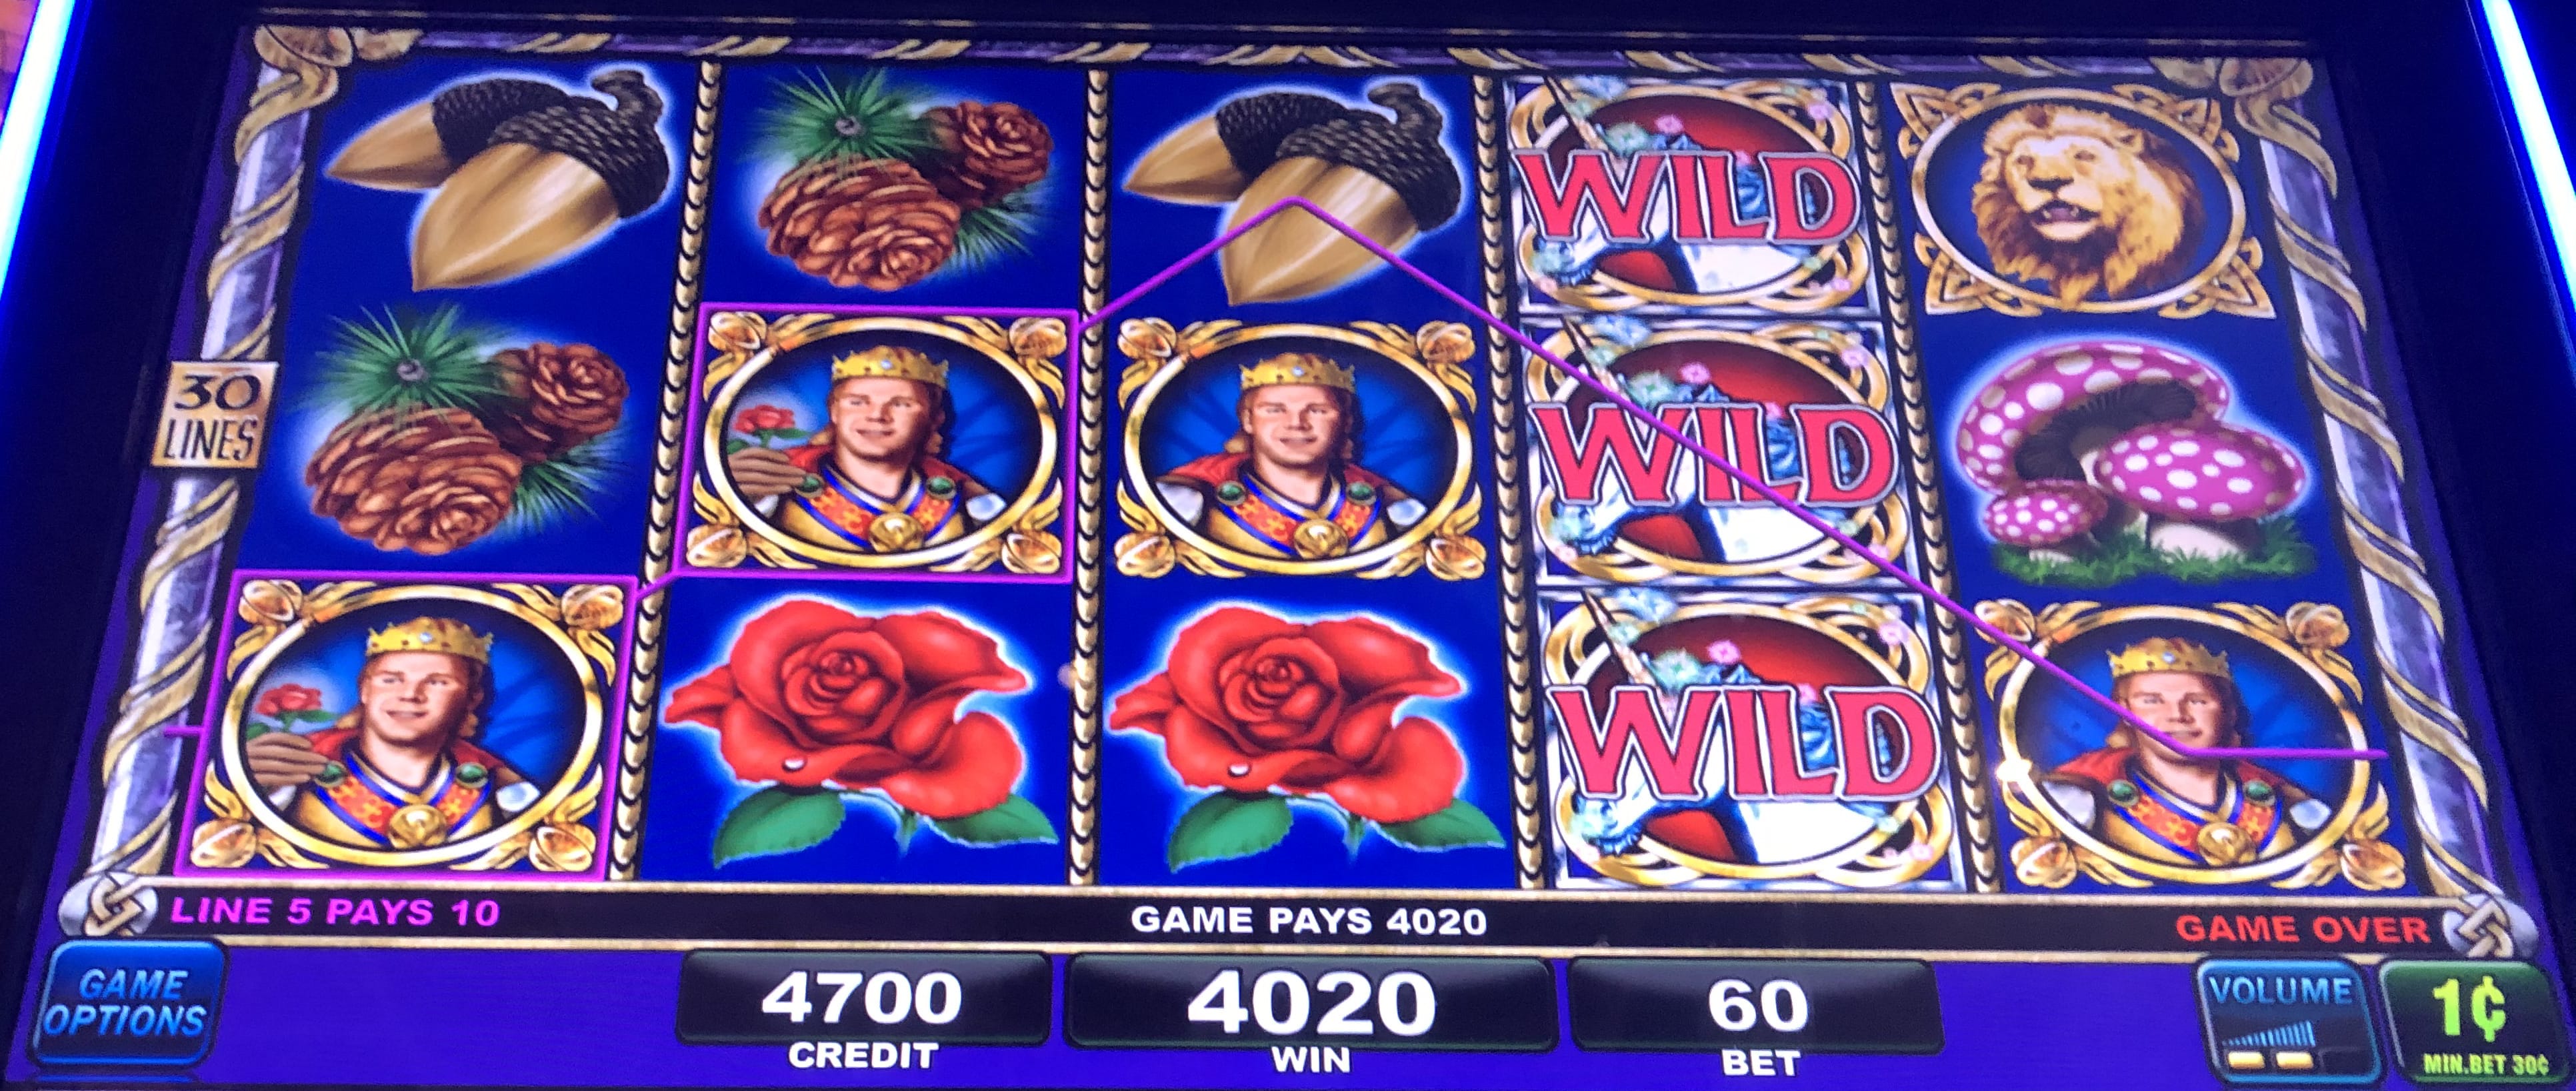 no deposit casino bonus codes june 2020